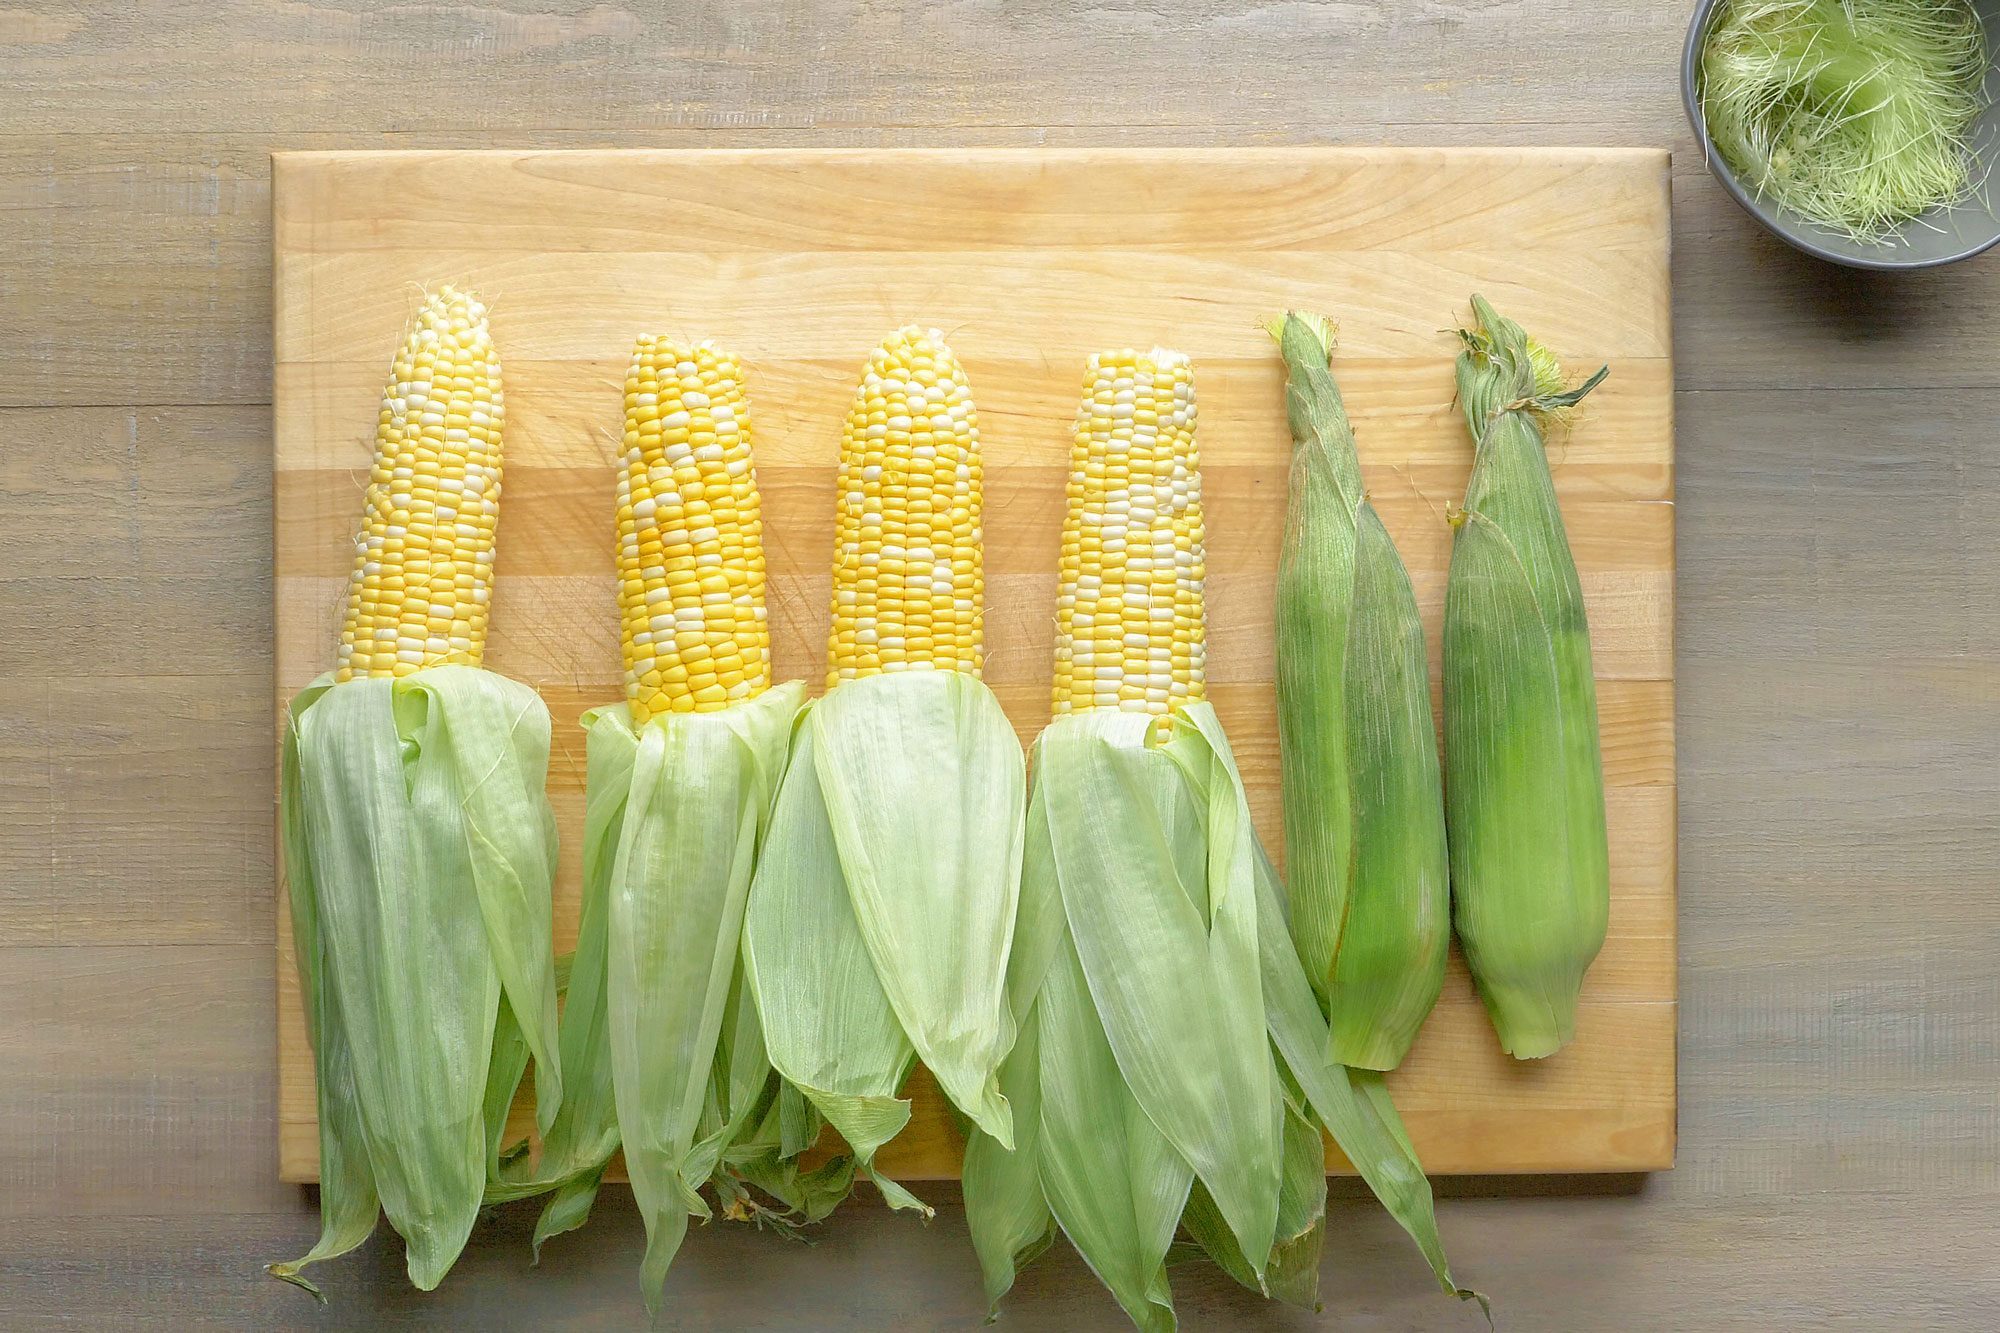 Carefully peel back the corn husks